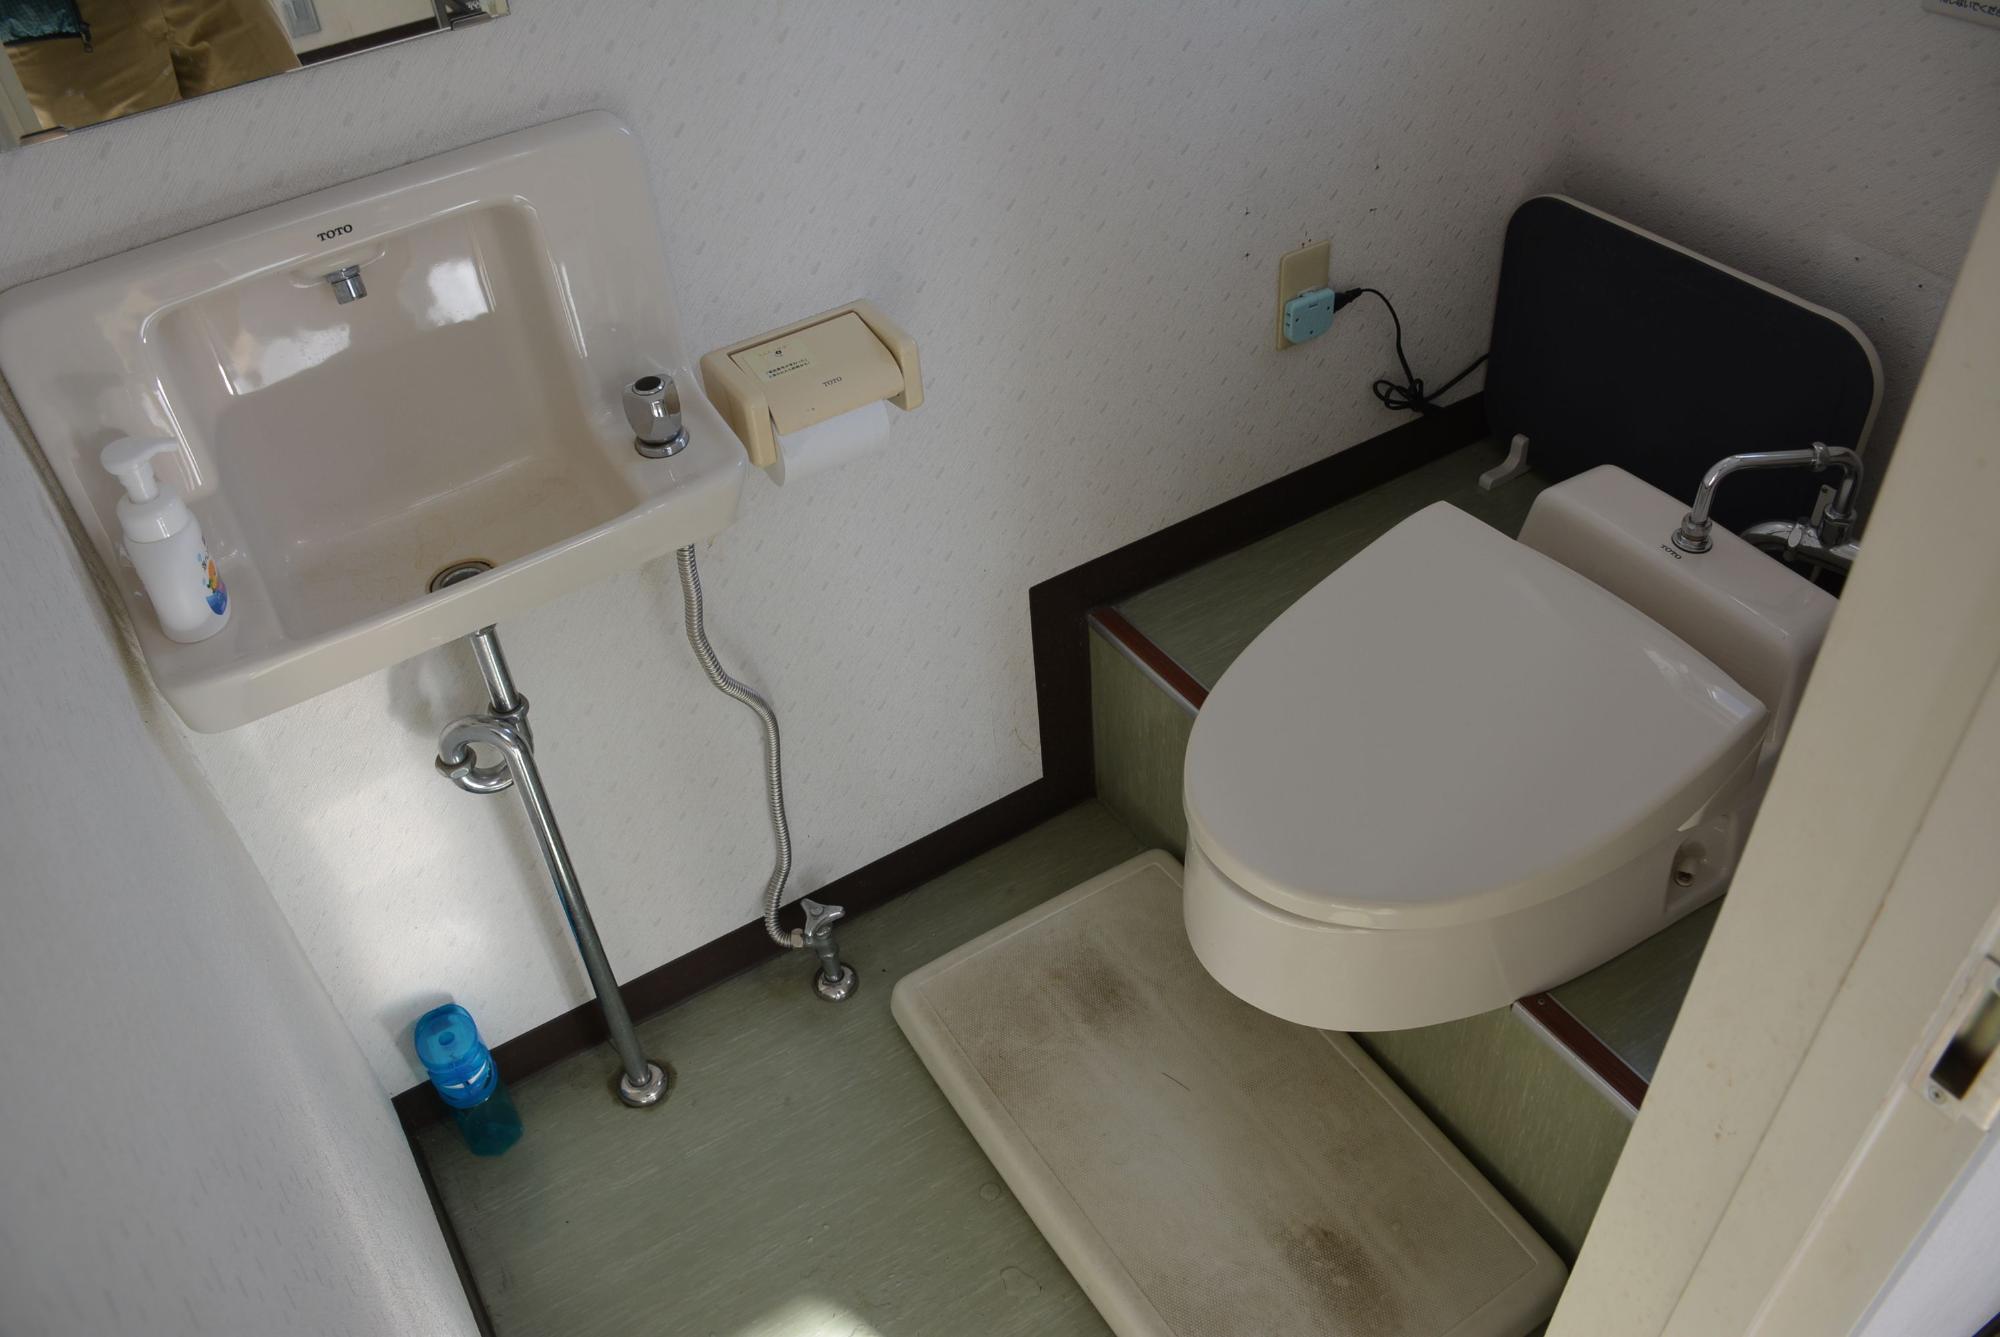 ハンドソープが置かれた手洗い場と洋式トイレの写真